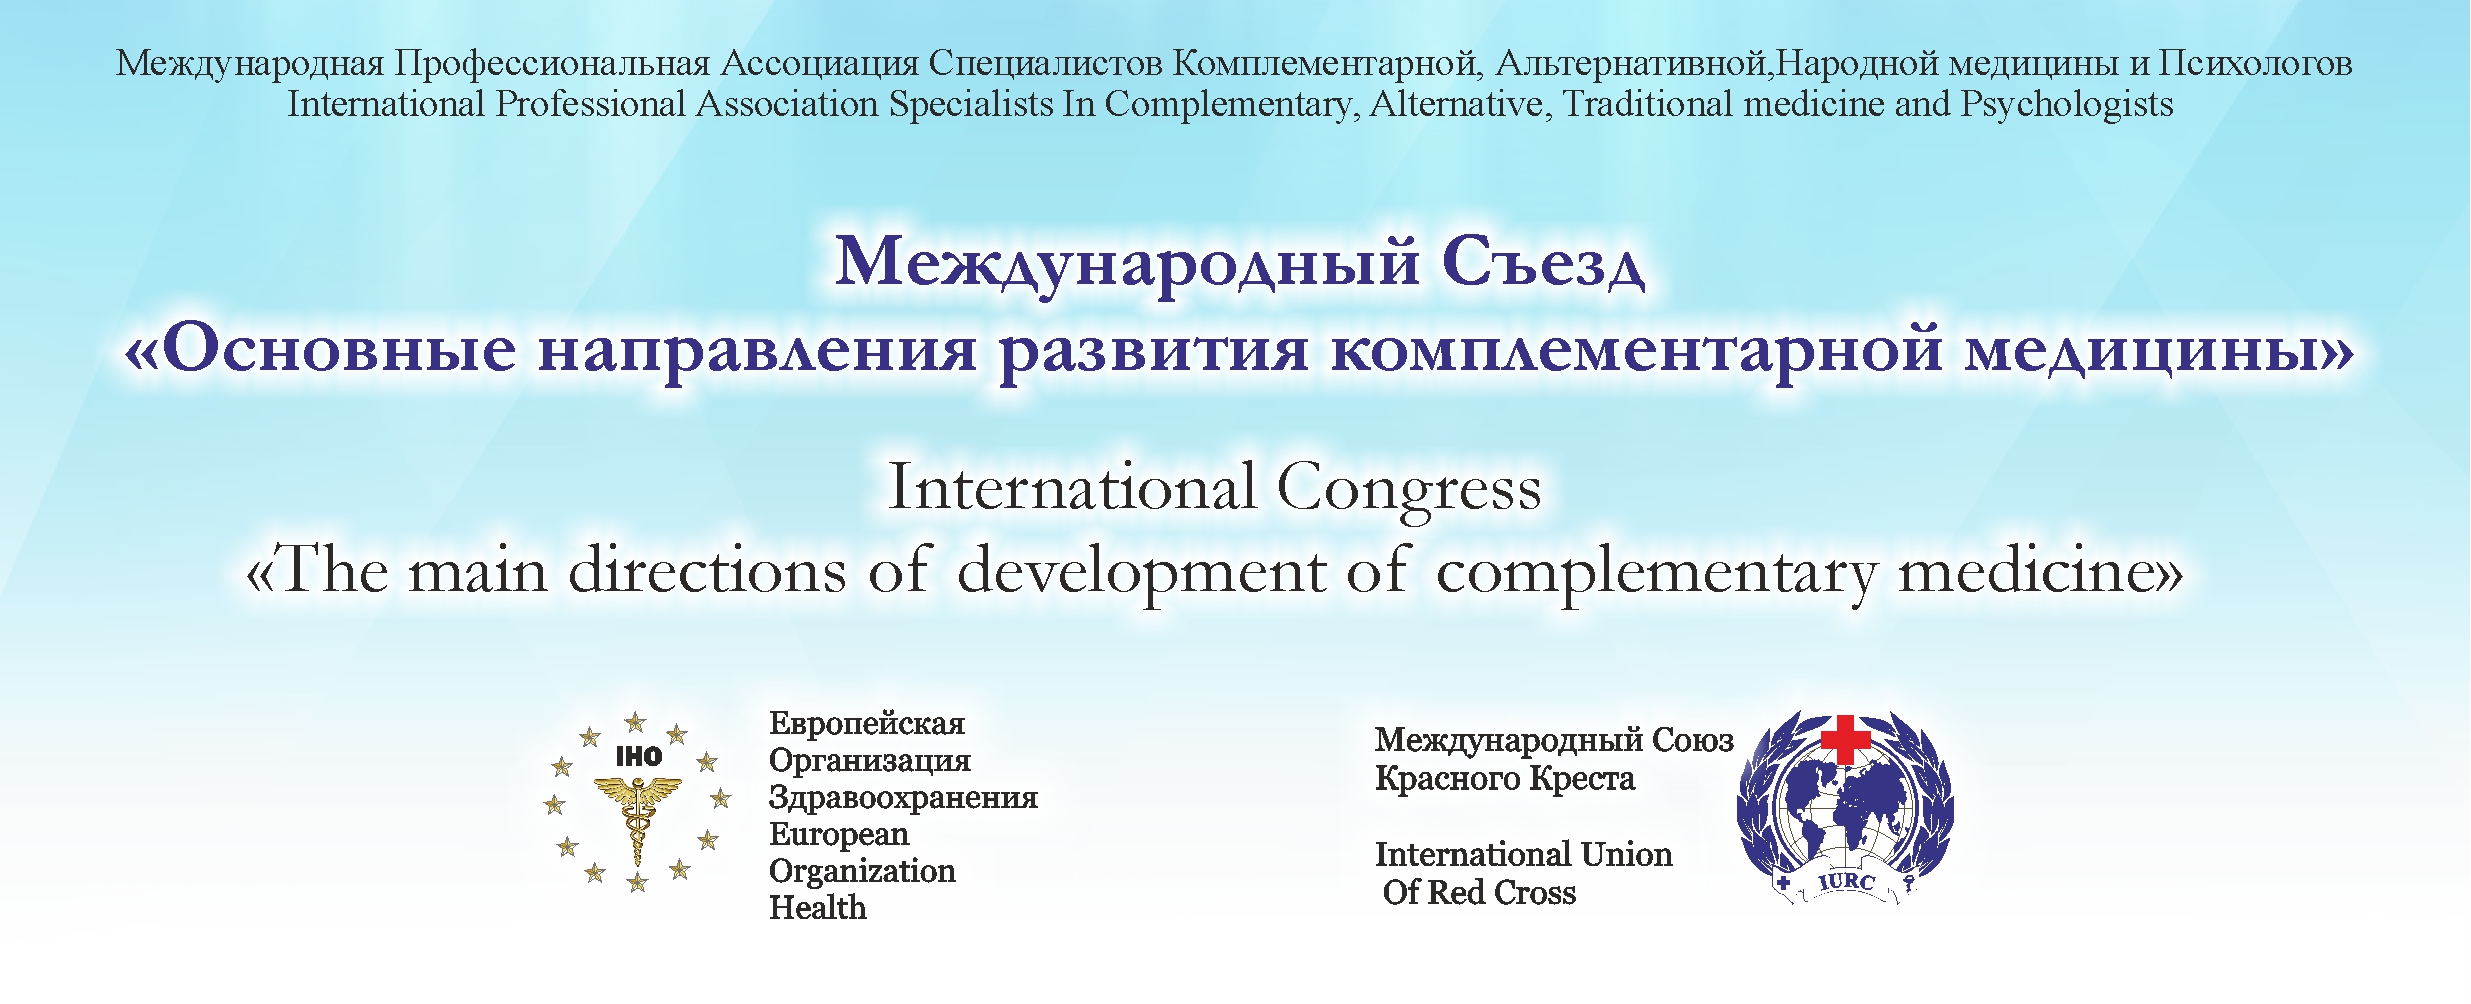 1 - Международная Конференция "Основные направления развития комплементарной медицины"